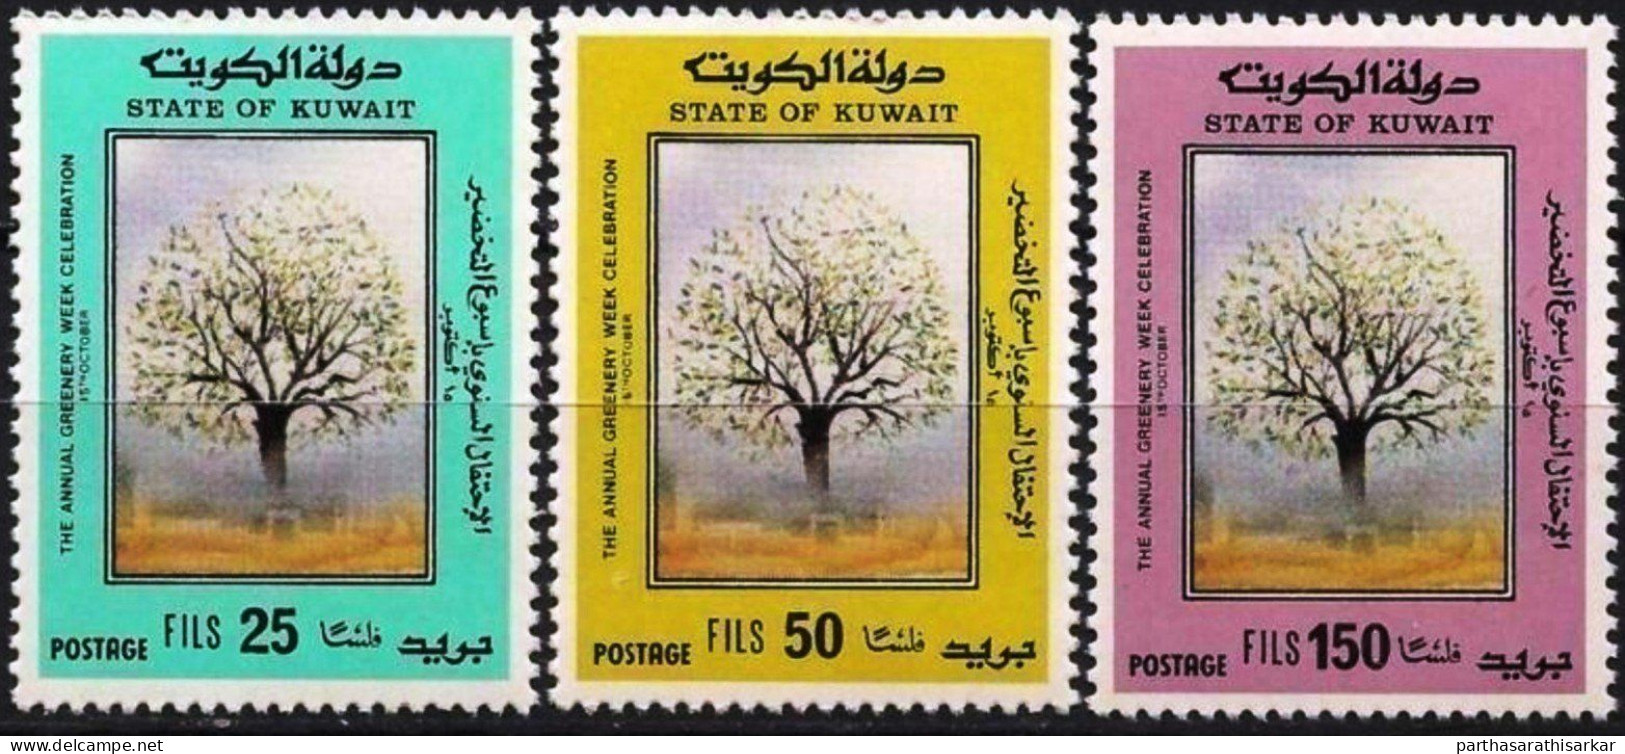 KUWAIT 1989 GREENERY WEEK NATURE COMPLETE SET MNH - Kuwait